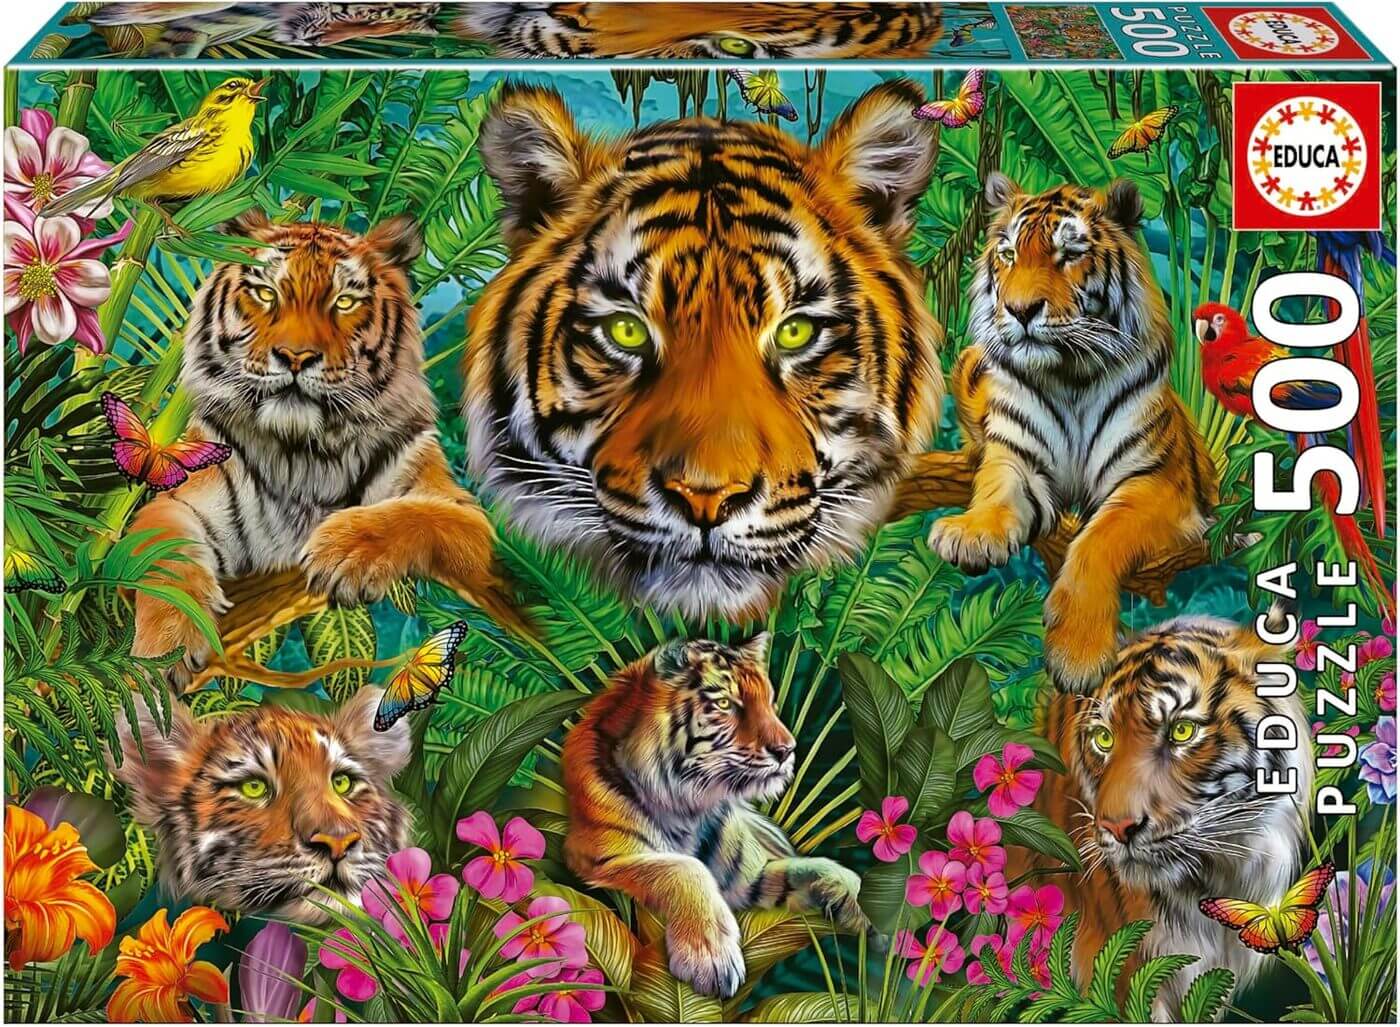 500 Jungla de Tigres ( Educa 19902 ) imagen b